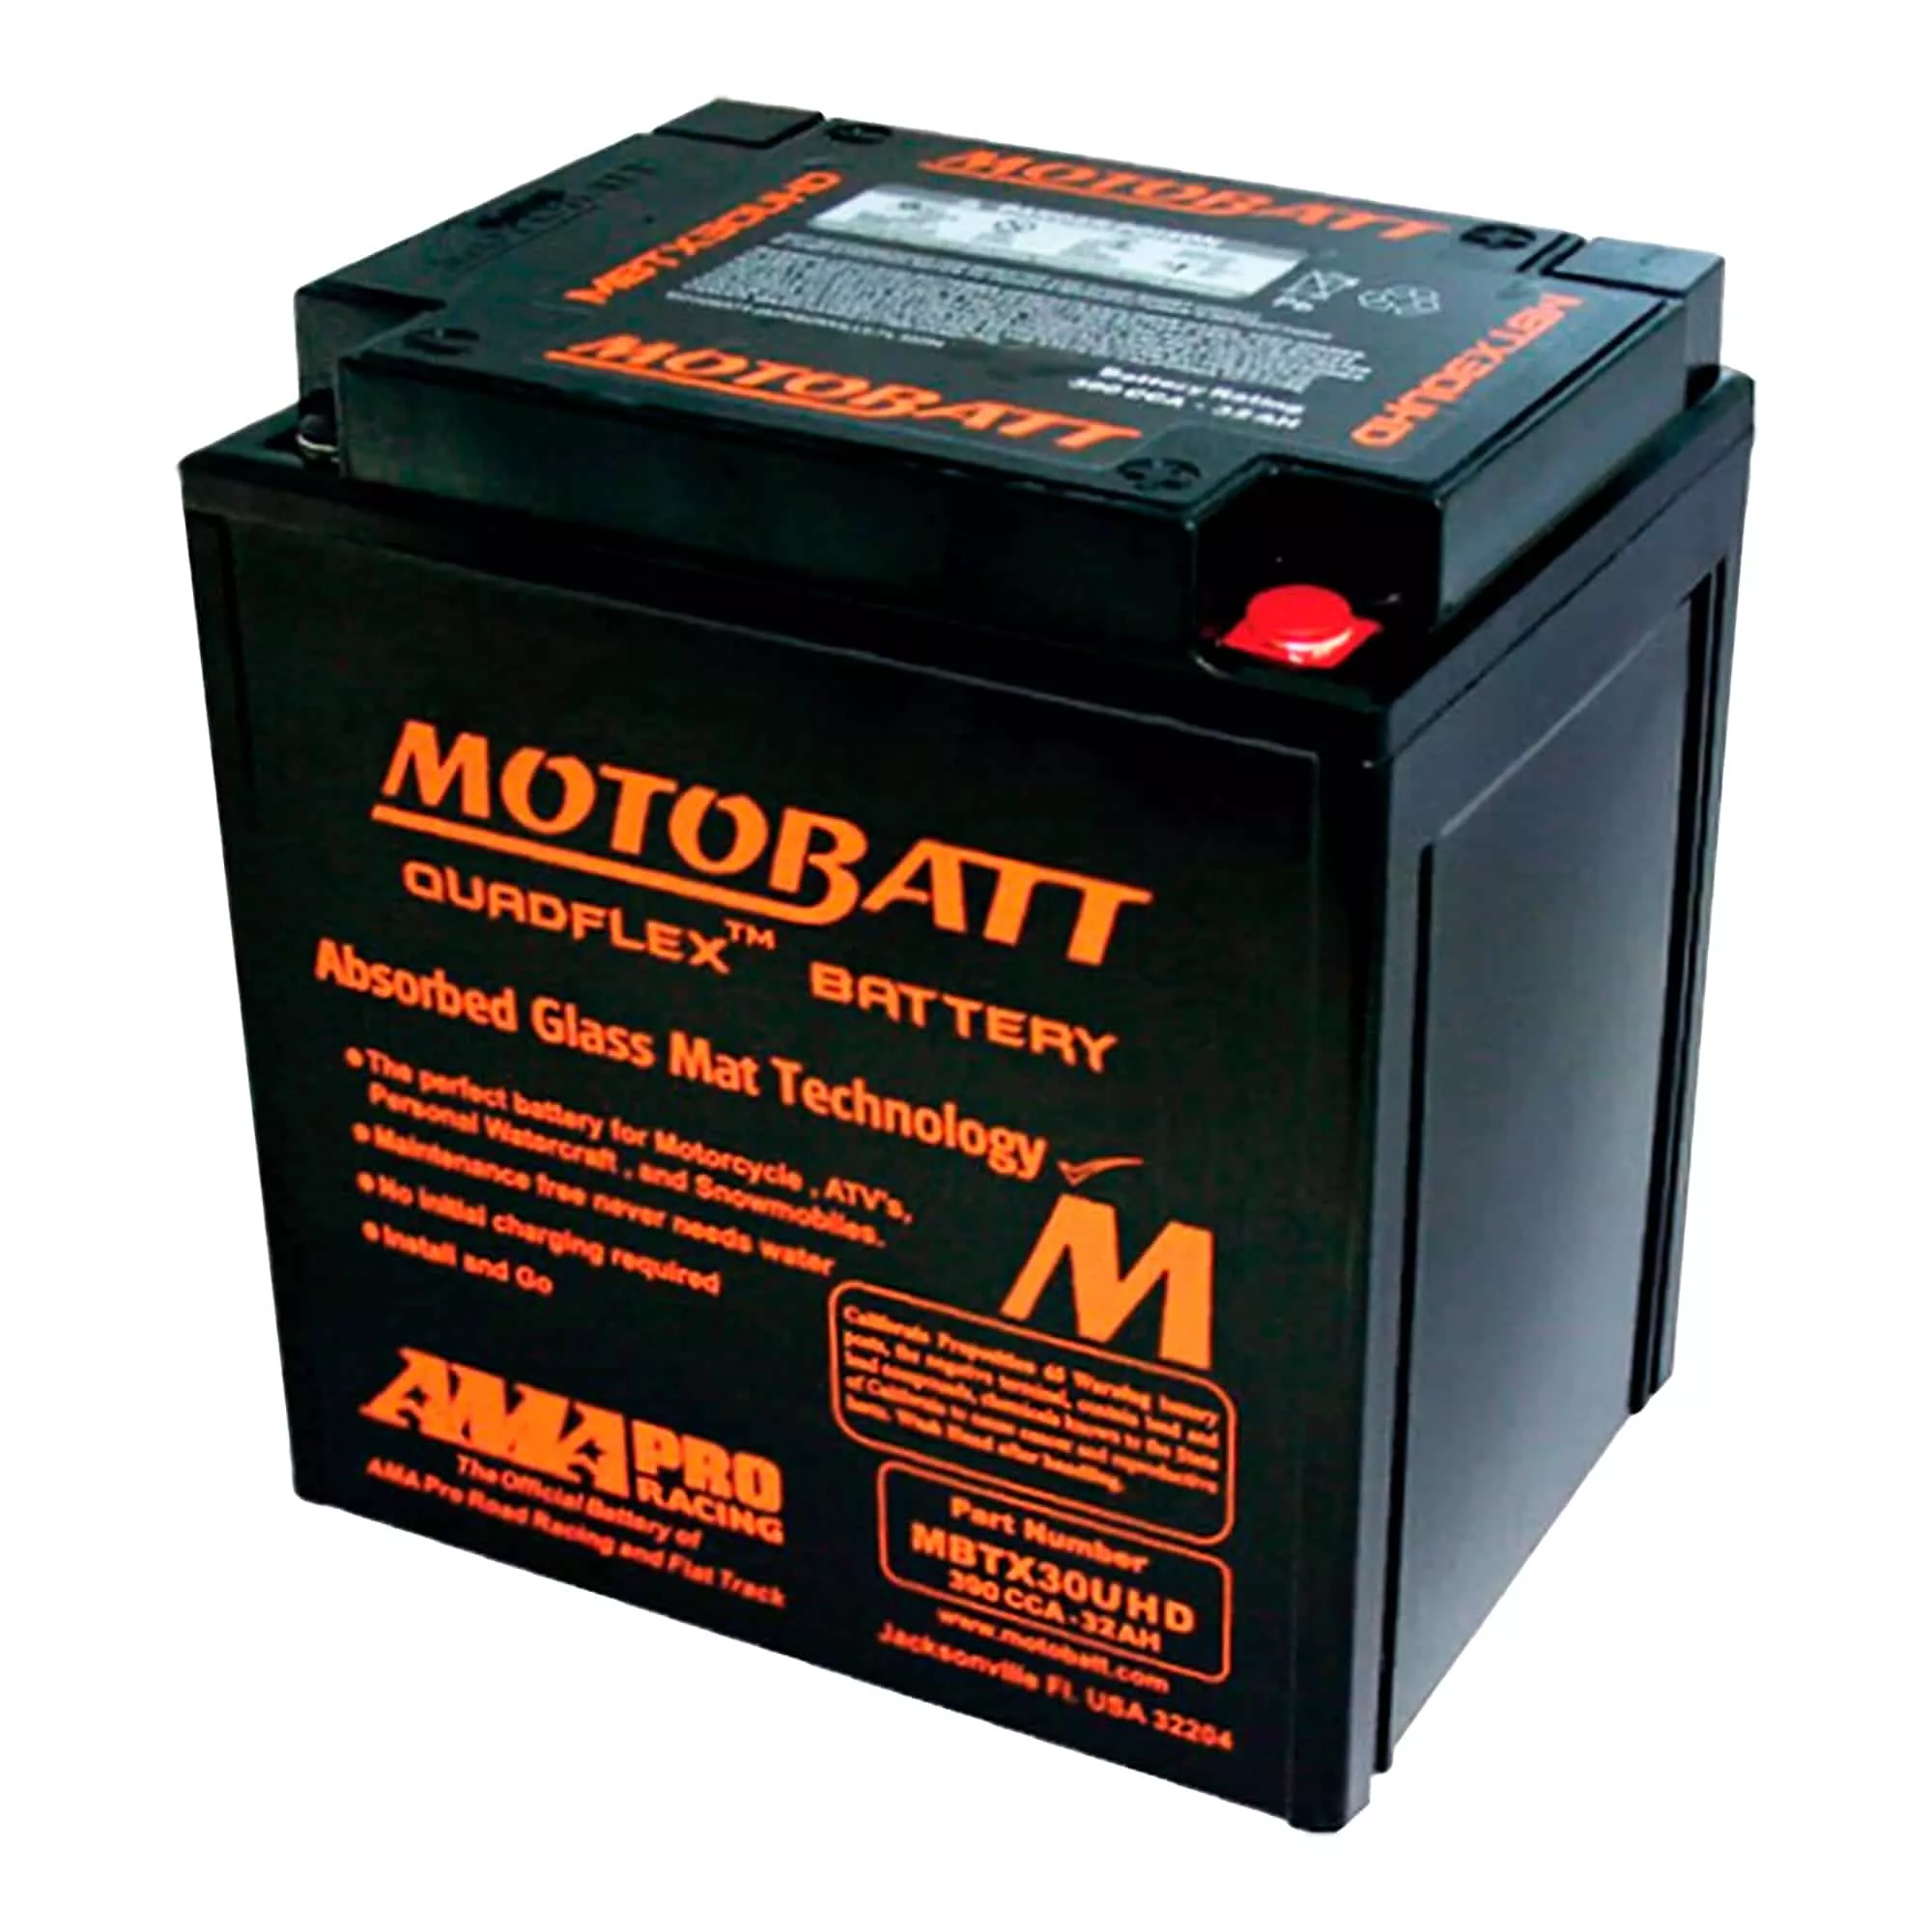 Мото аккумулятор MOTOBATT залитый и заряженный AGM 32Ah 390A (MBTX30UHD)